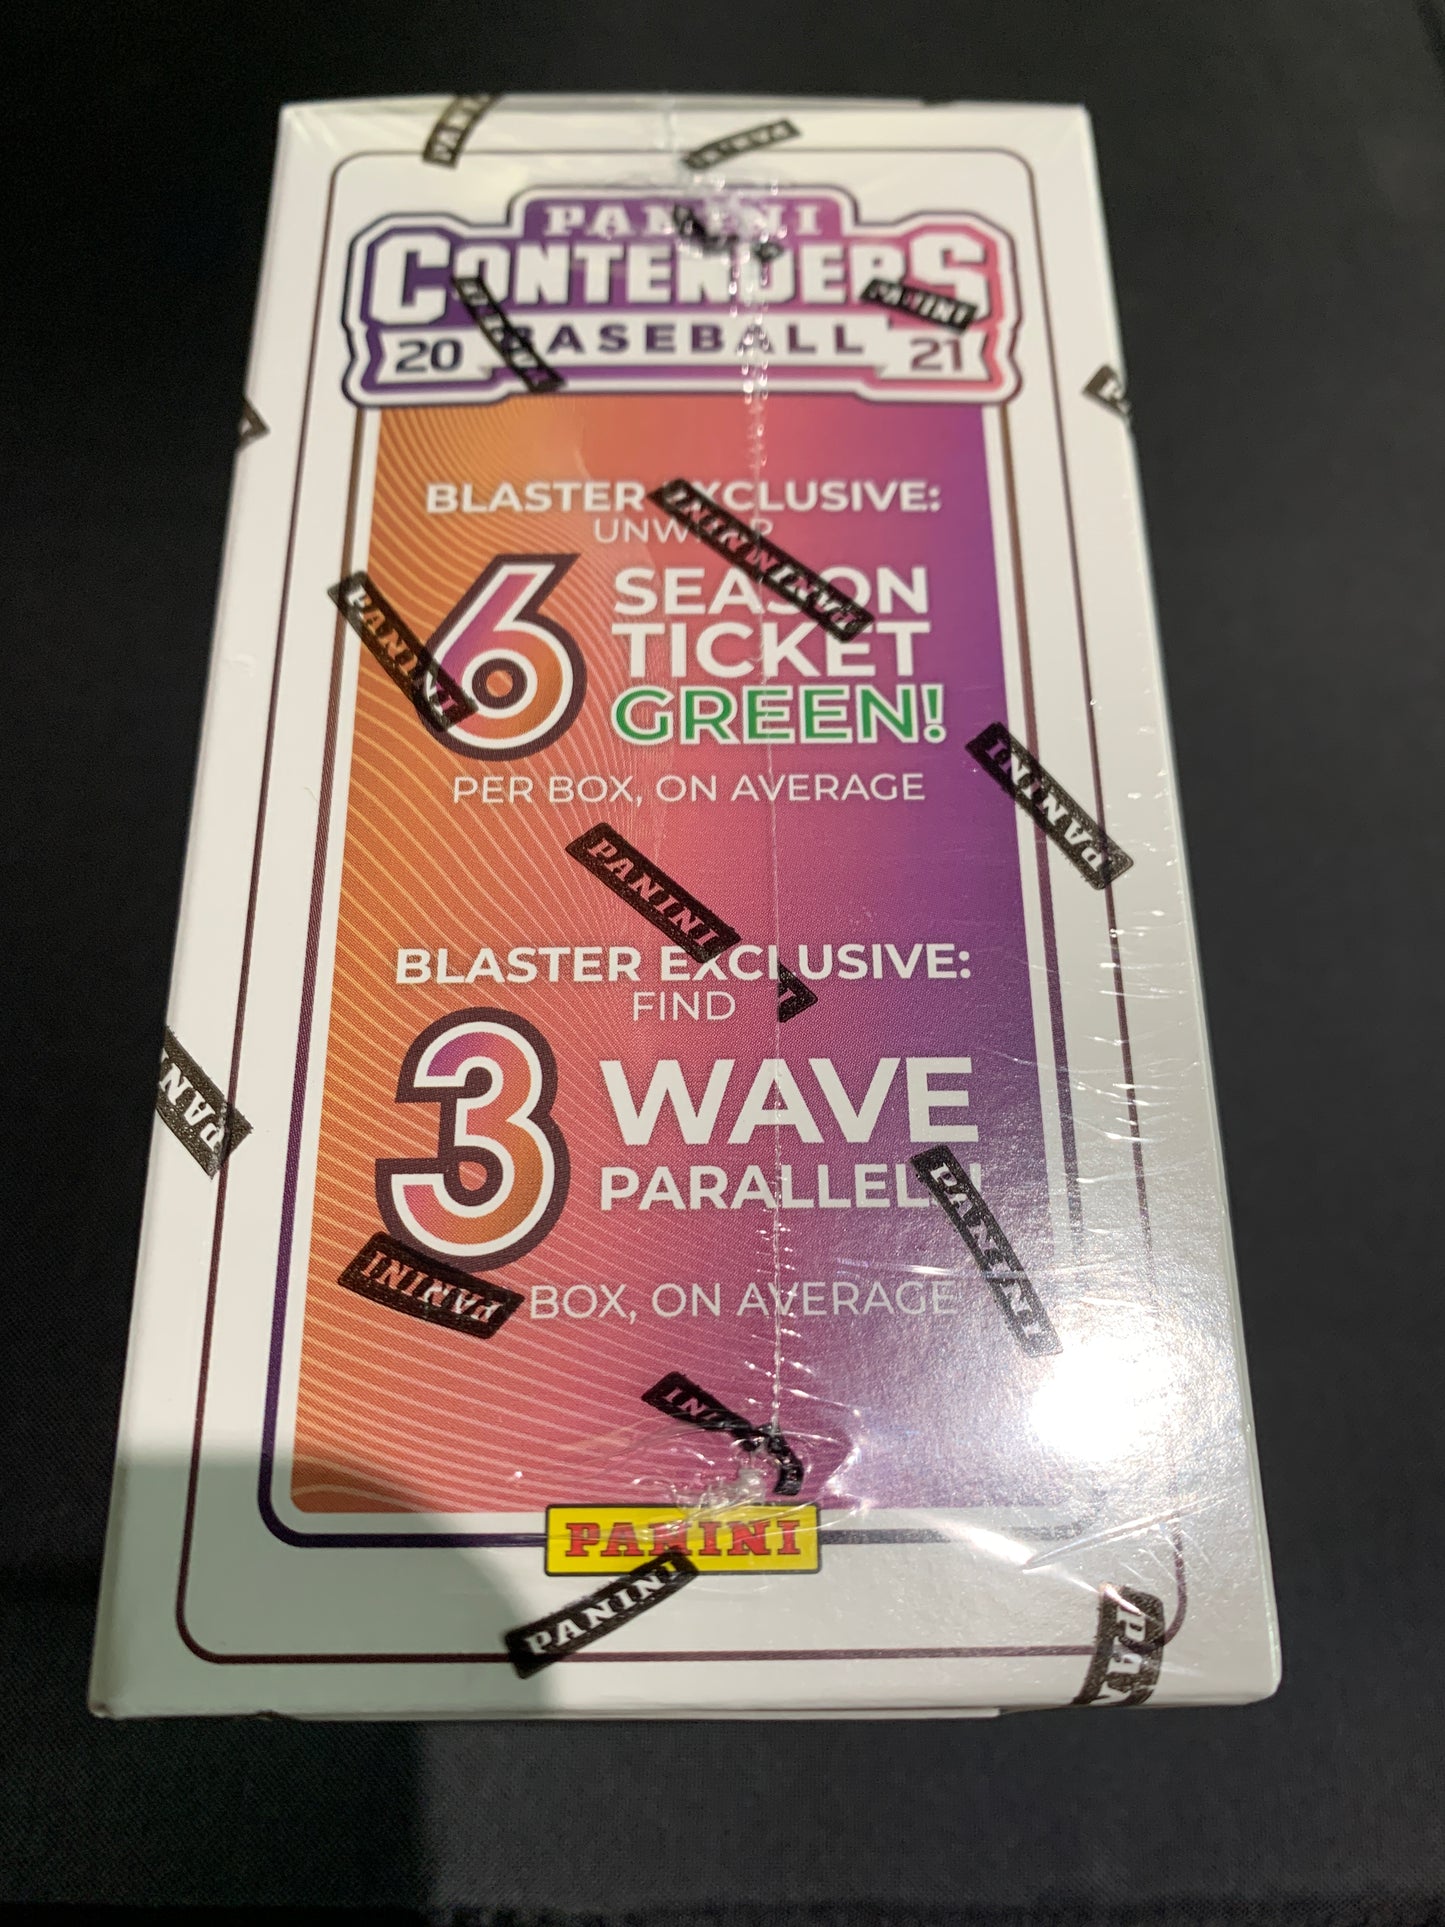 2021 Panini Contenders Baseball Trading Card Box (BLASTER) 1 Auto or Memorabilia per box